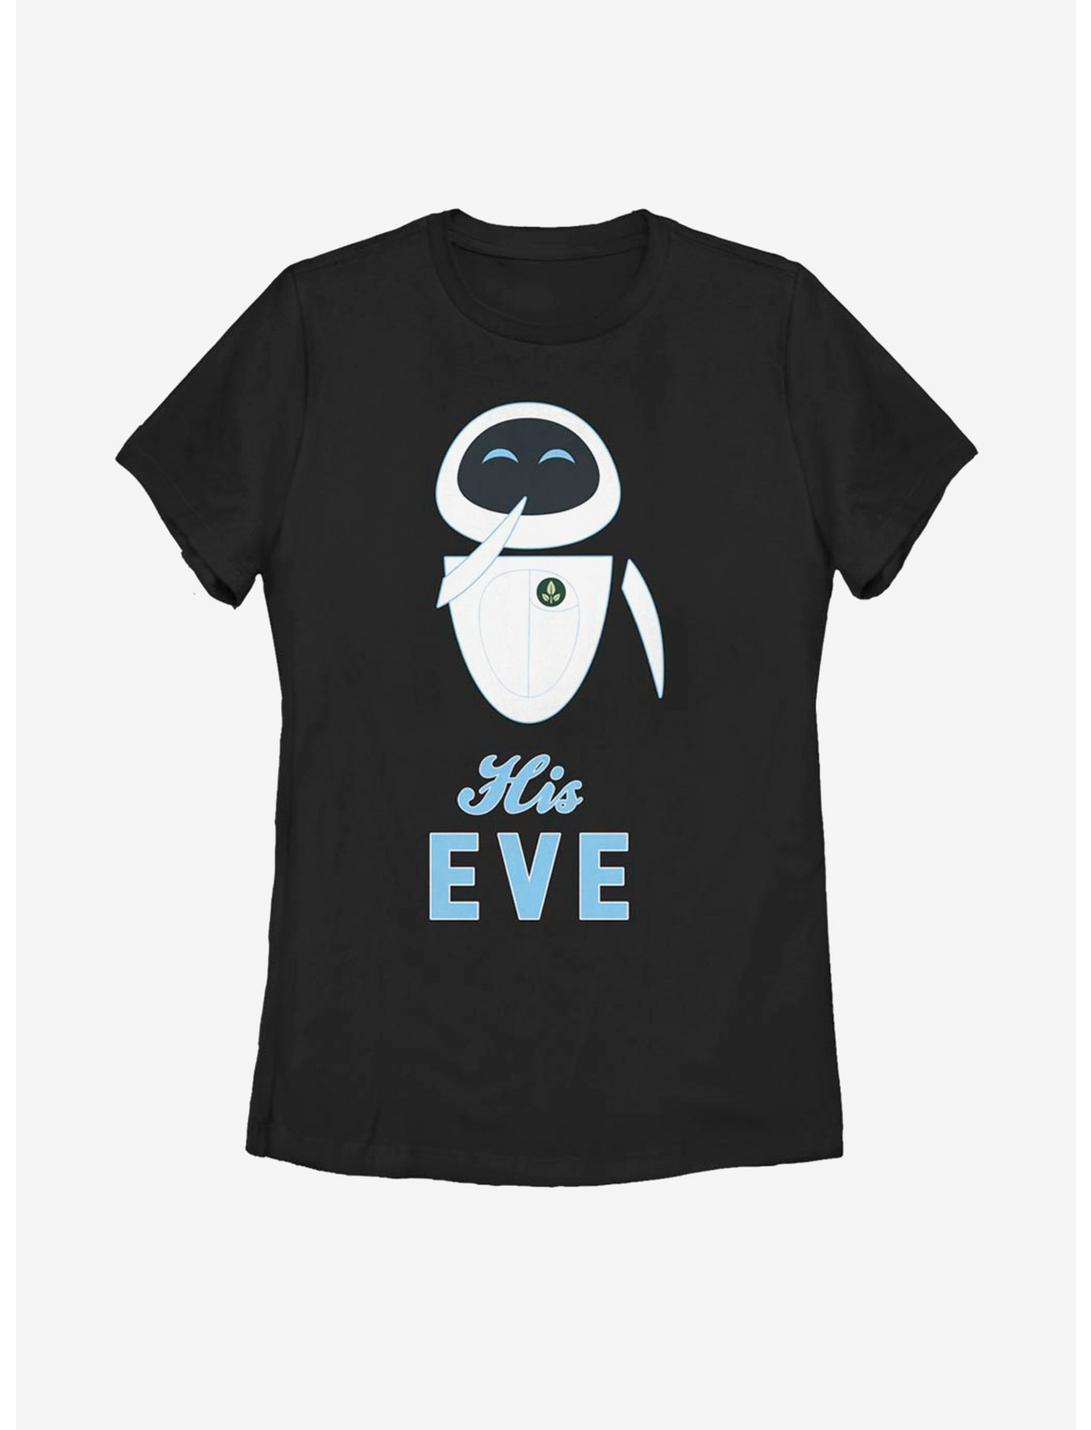 Disney Pixar WALL-E His Eve Womens T-Shirt, BLACK, hi-res